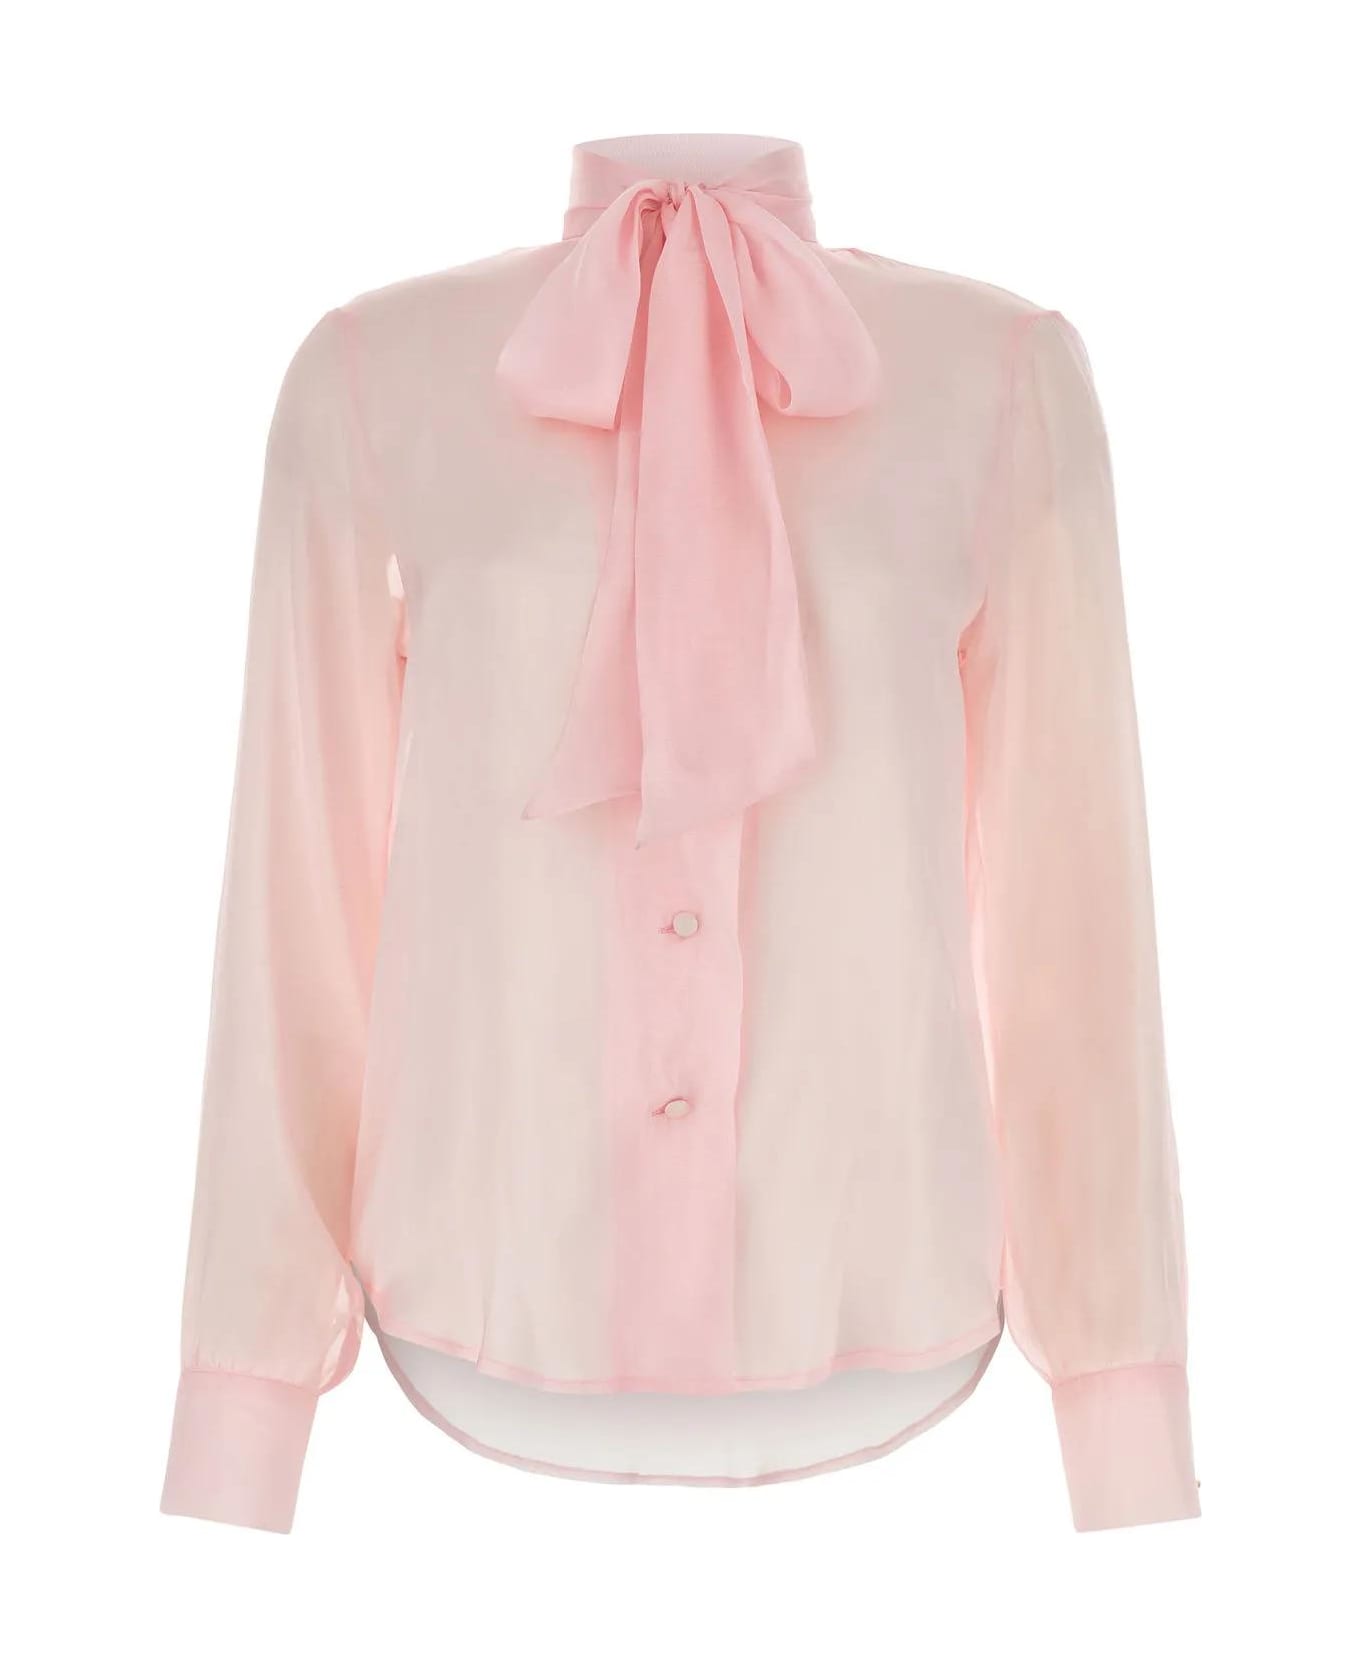 Hebe Studio Pink Chiffon Ava Shirt - Pink